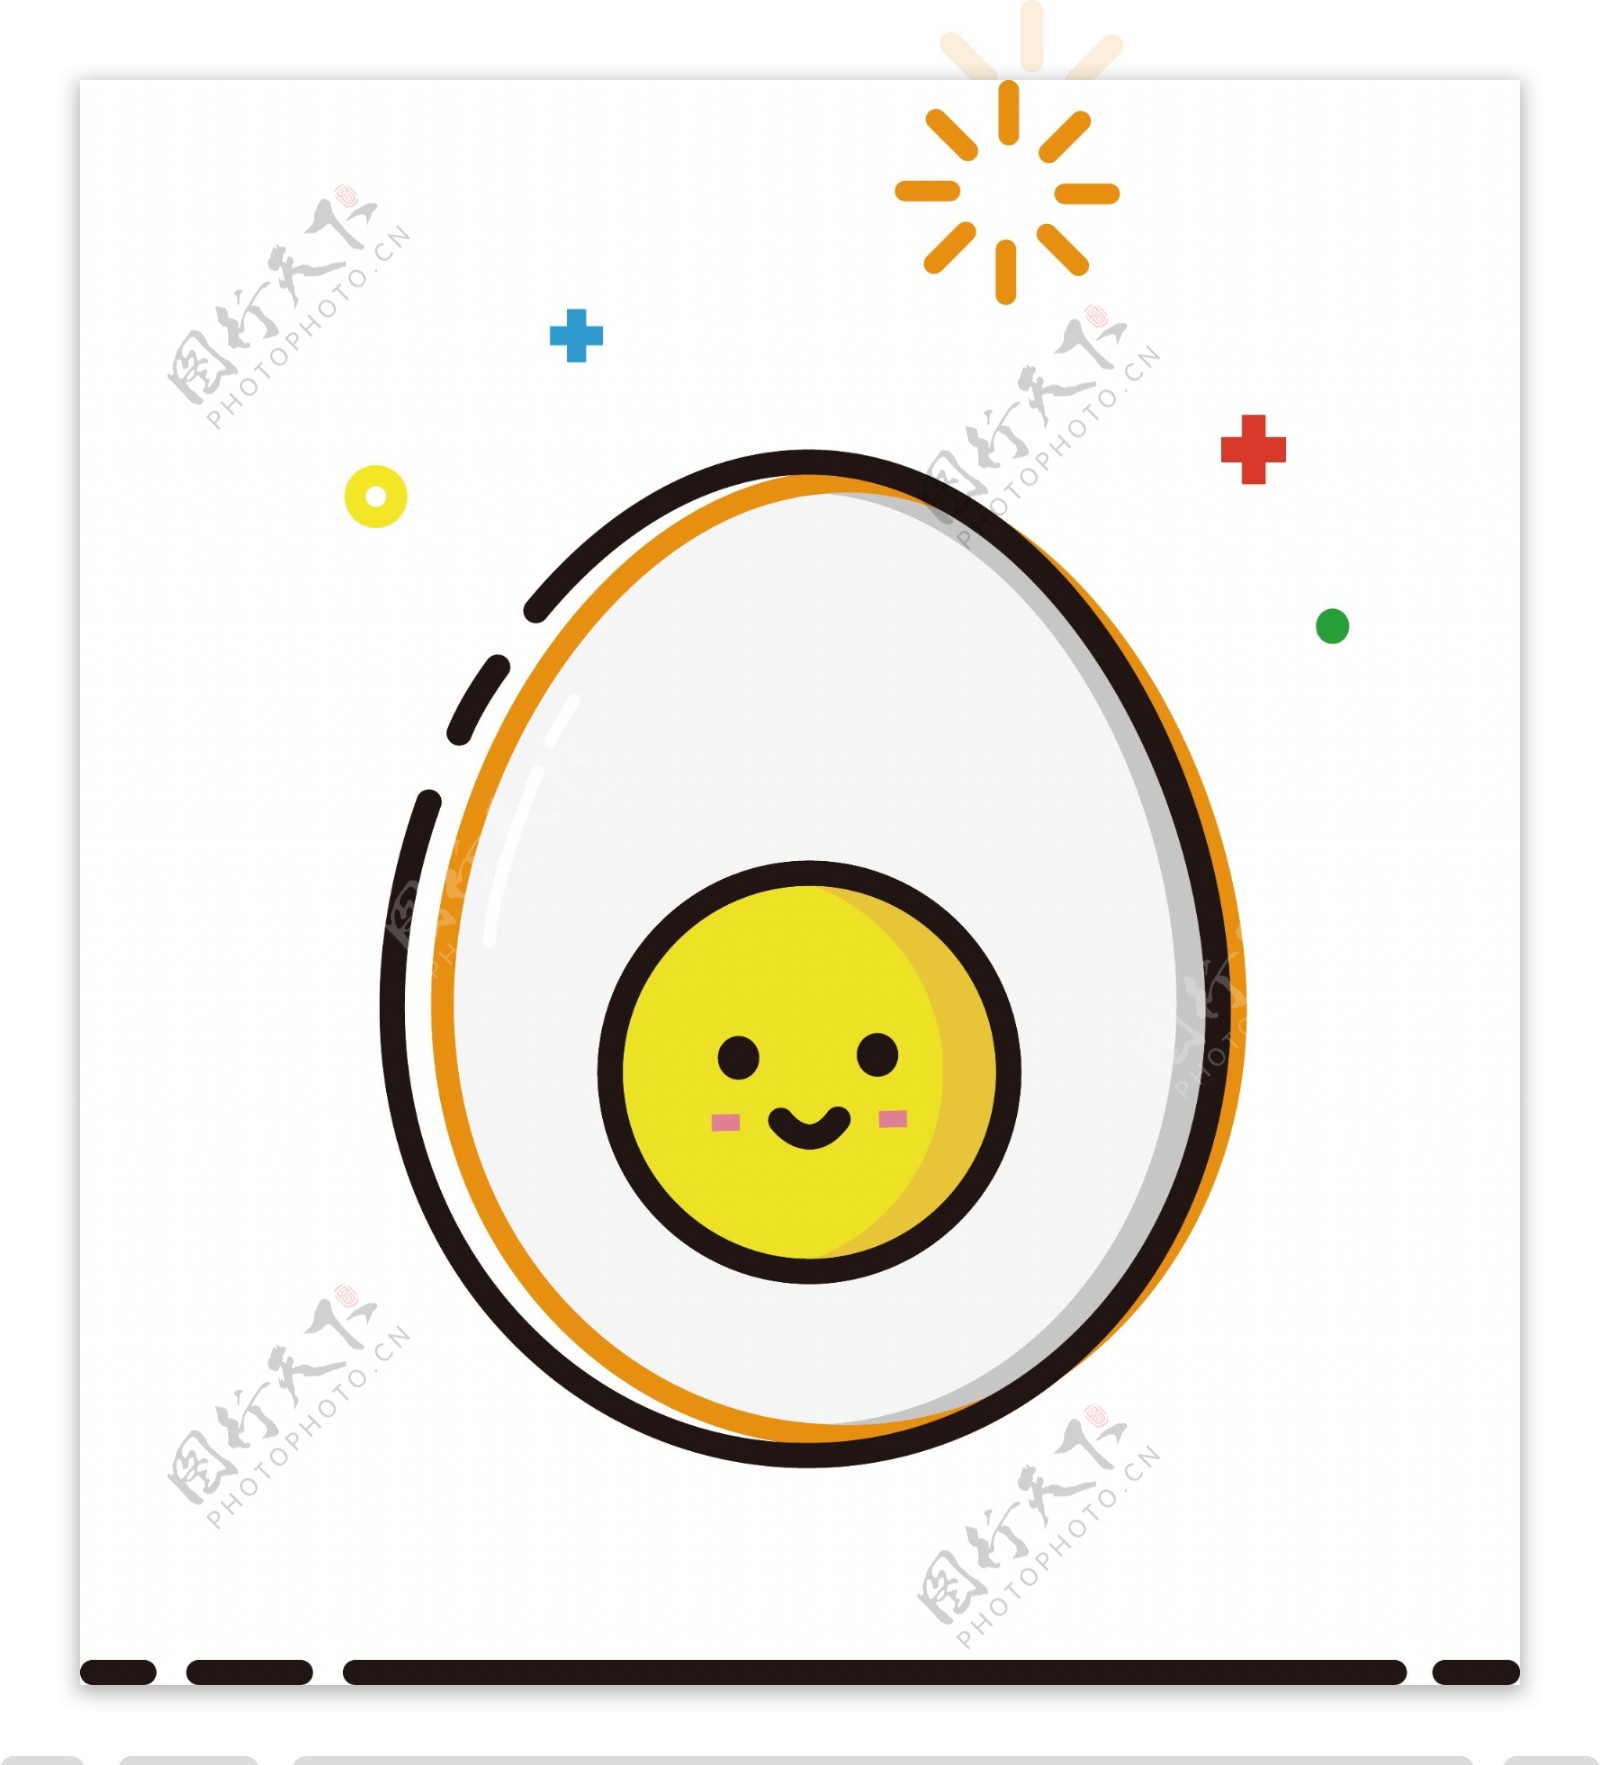 鸡蛋mbe卡通可爱矢量食物元素